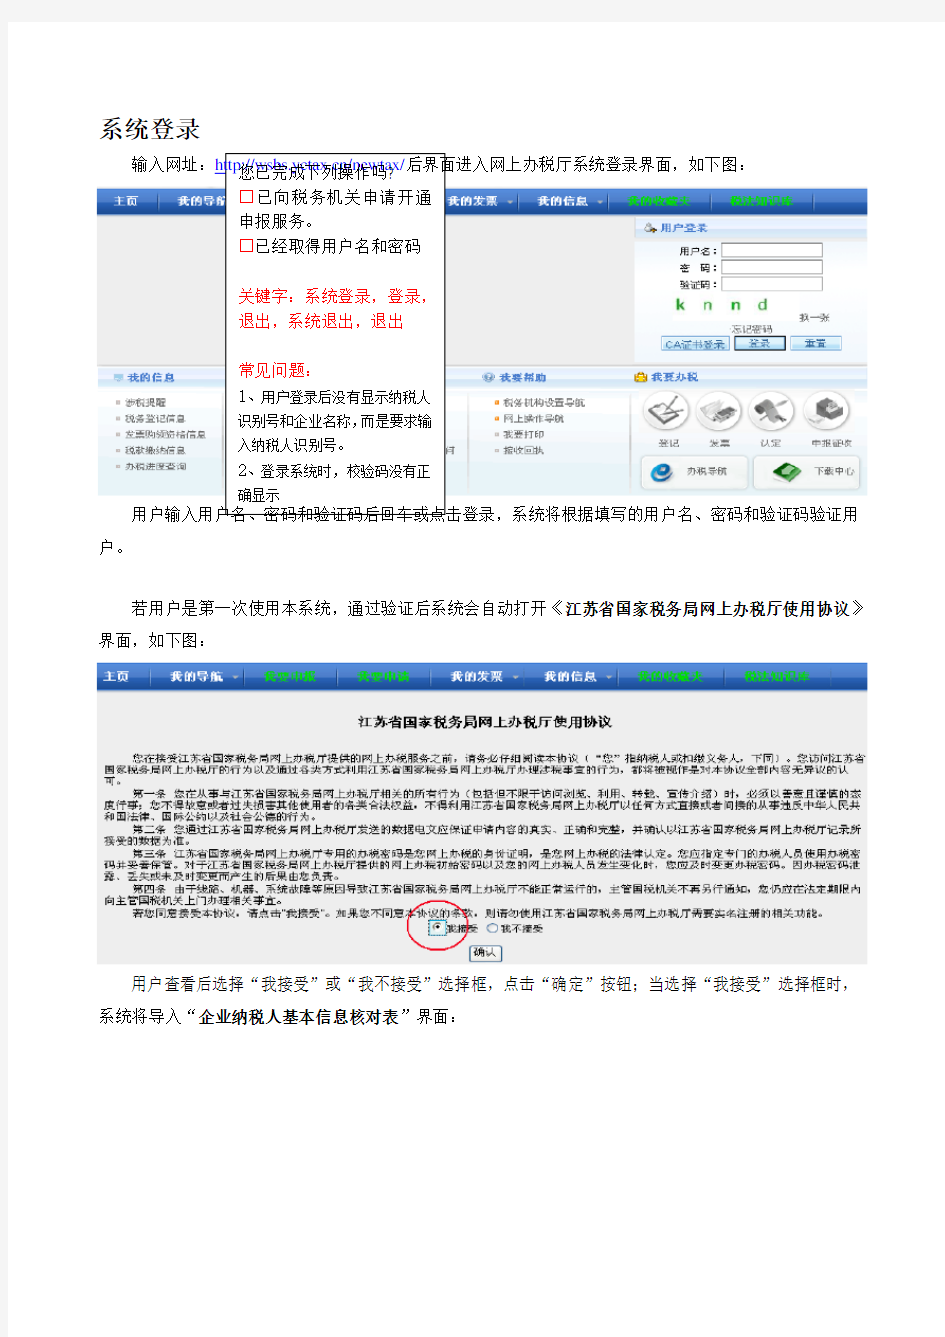 江苏国税网上申报2一般纳税人增值税申报流程